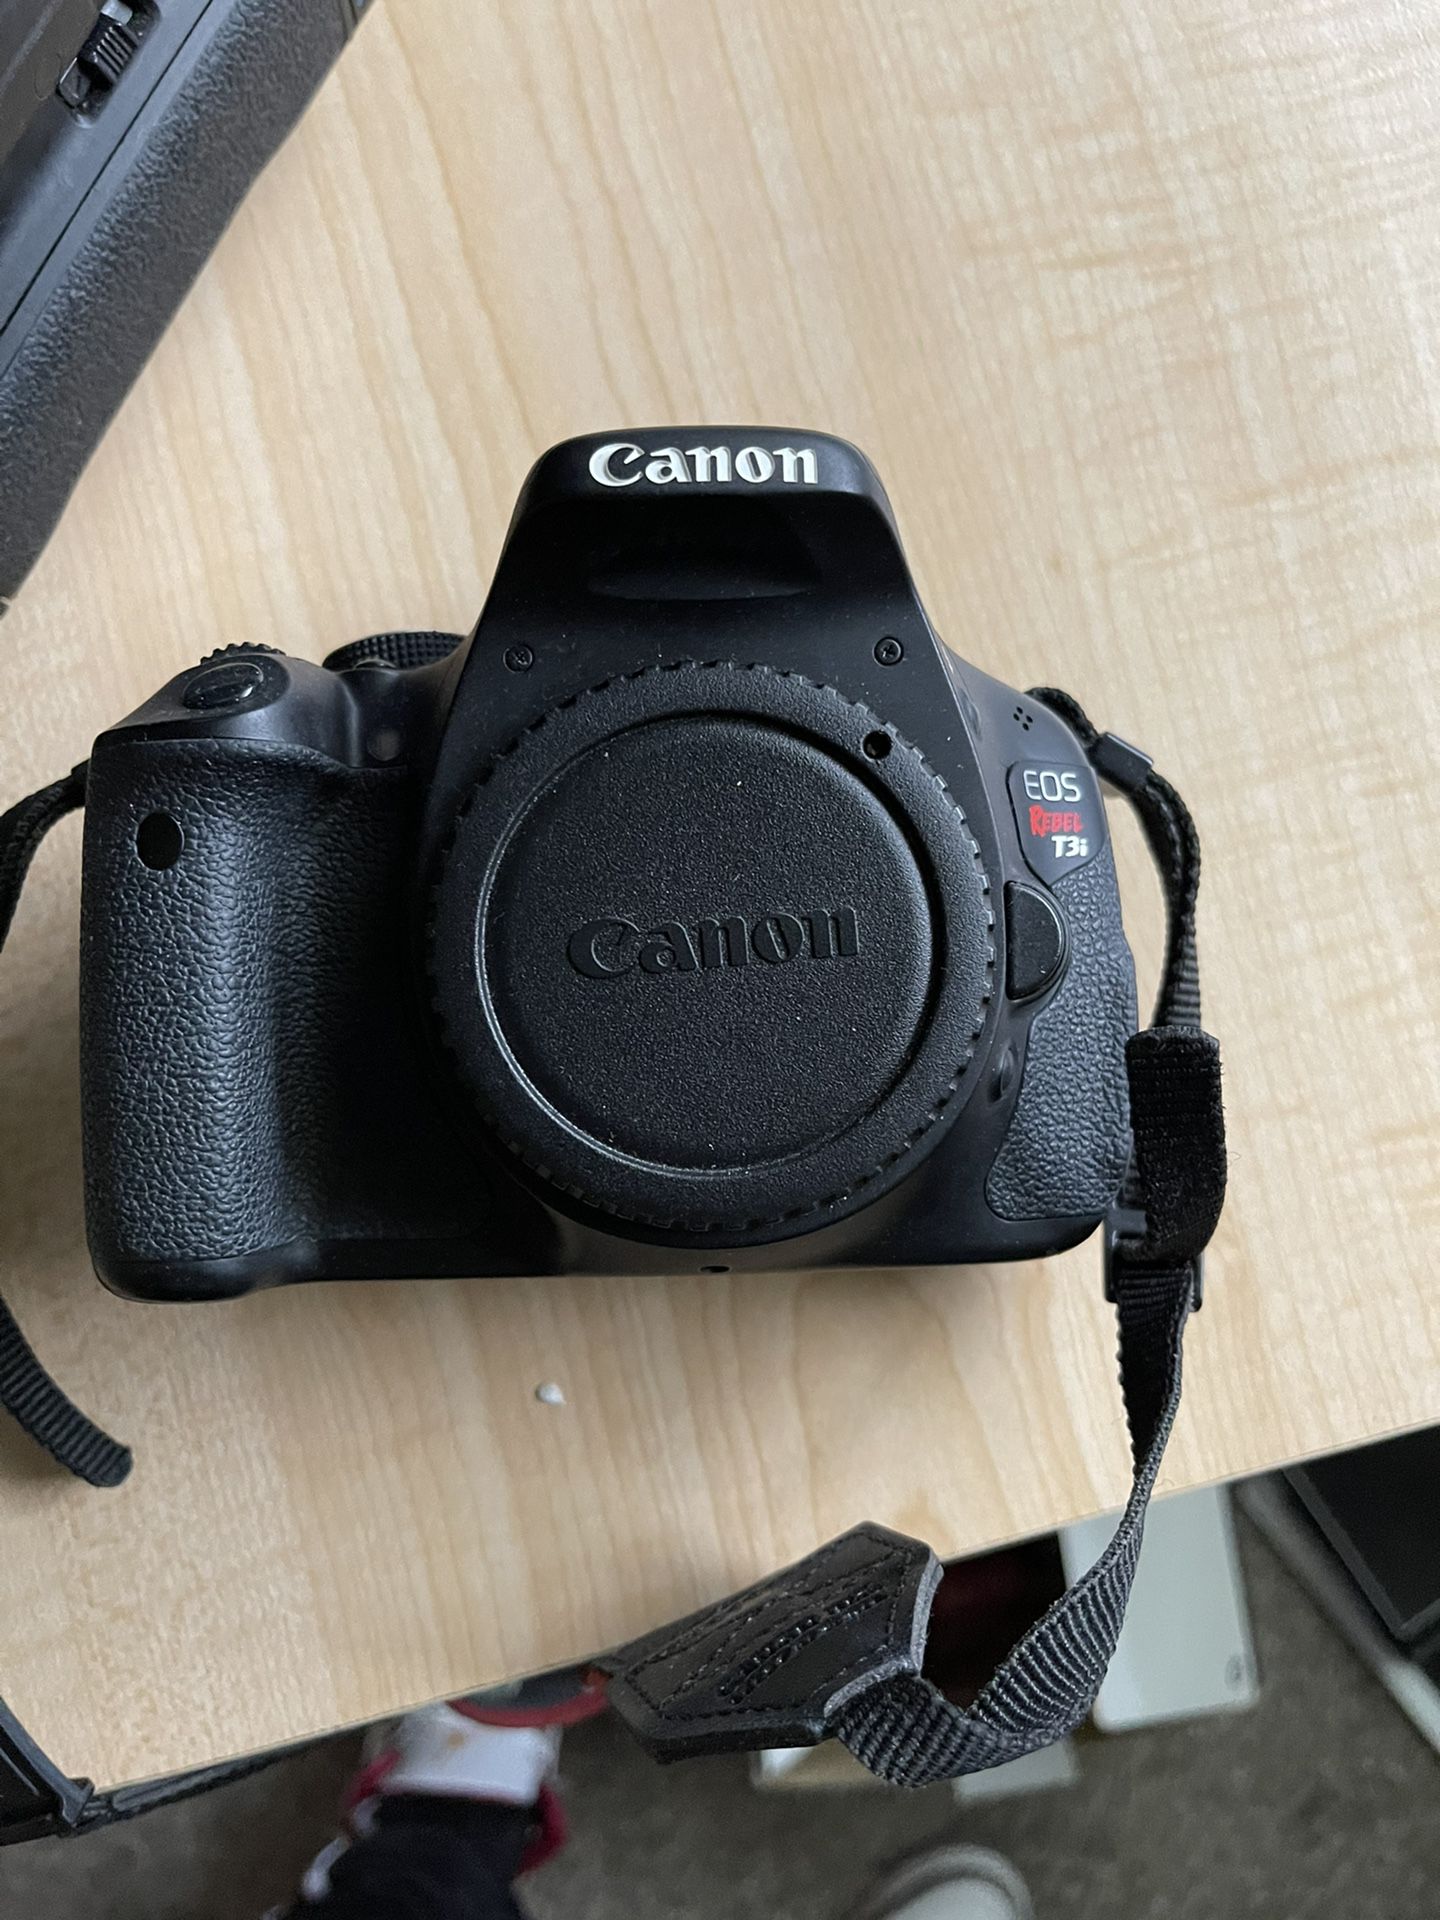 Canon 5D & T3i Rebel Cameras + Accessories 